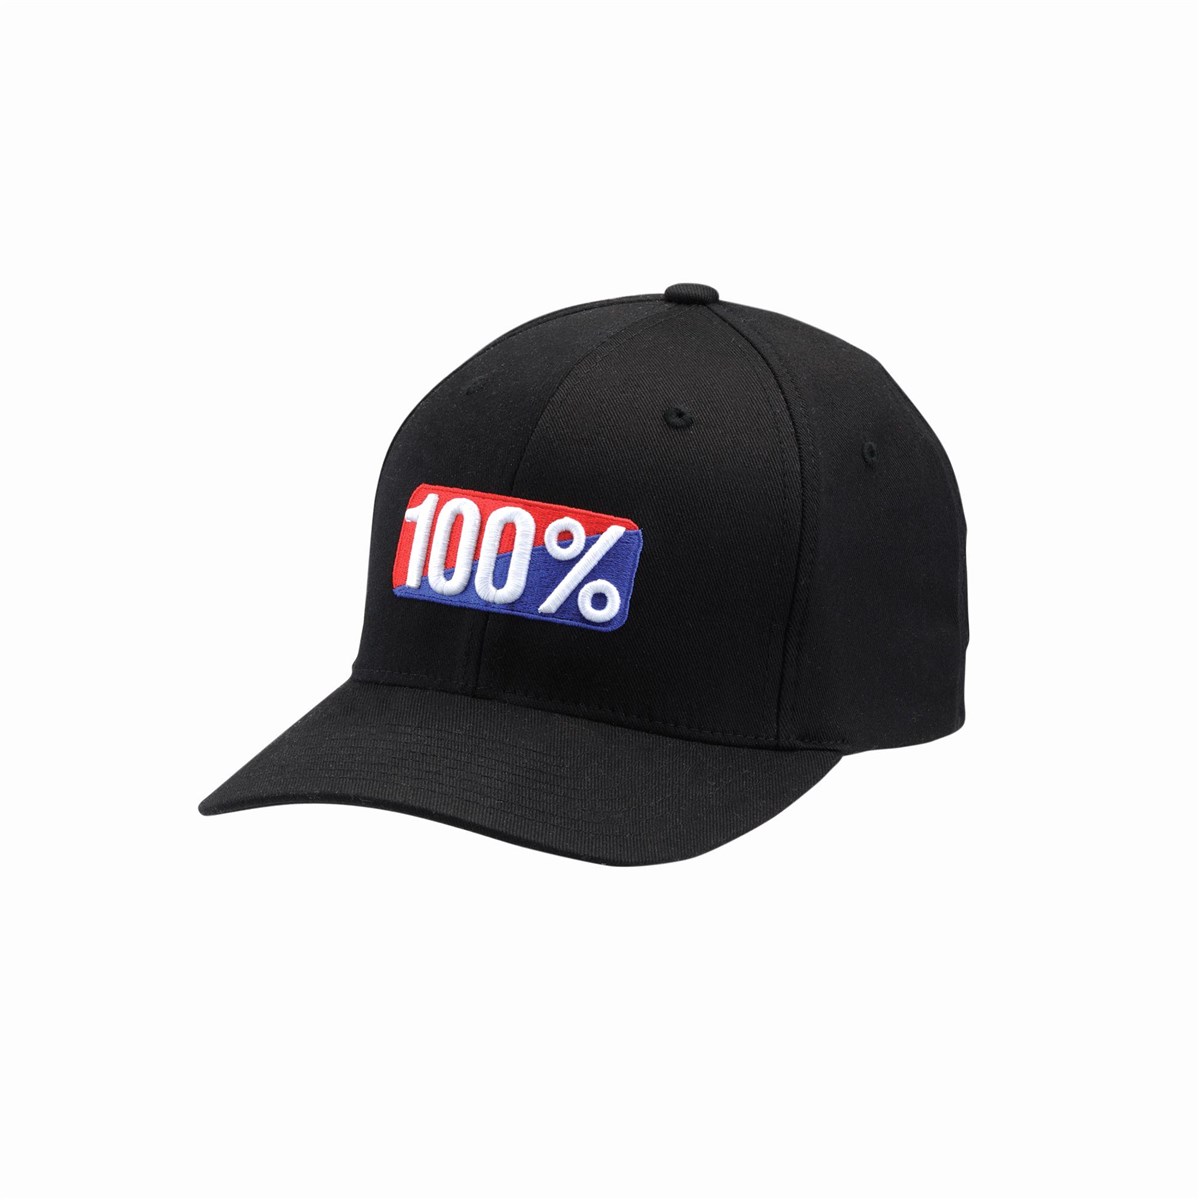 100% Classic X-Fit Flexfit Hat product image